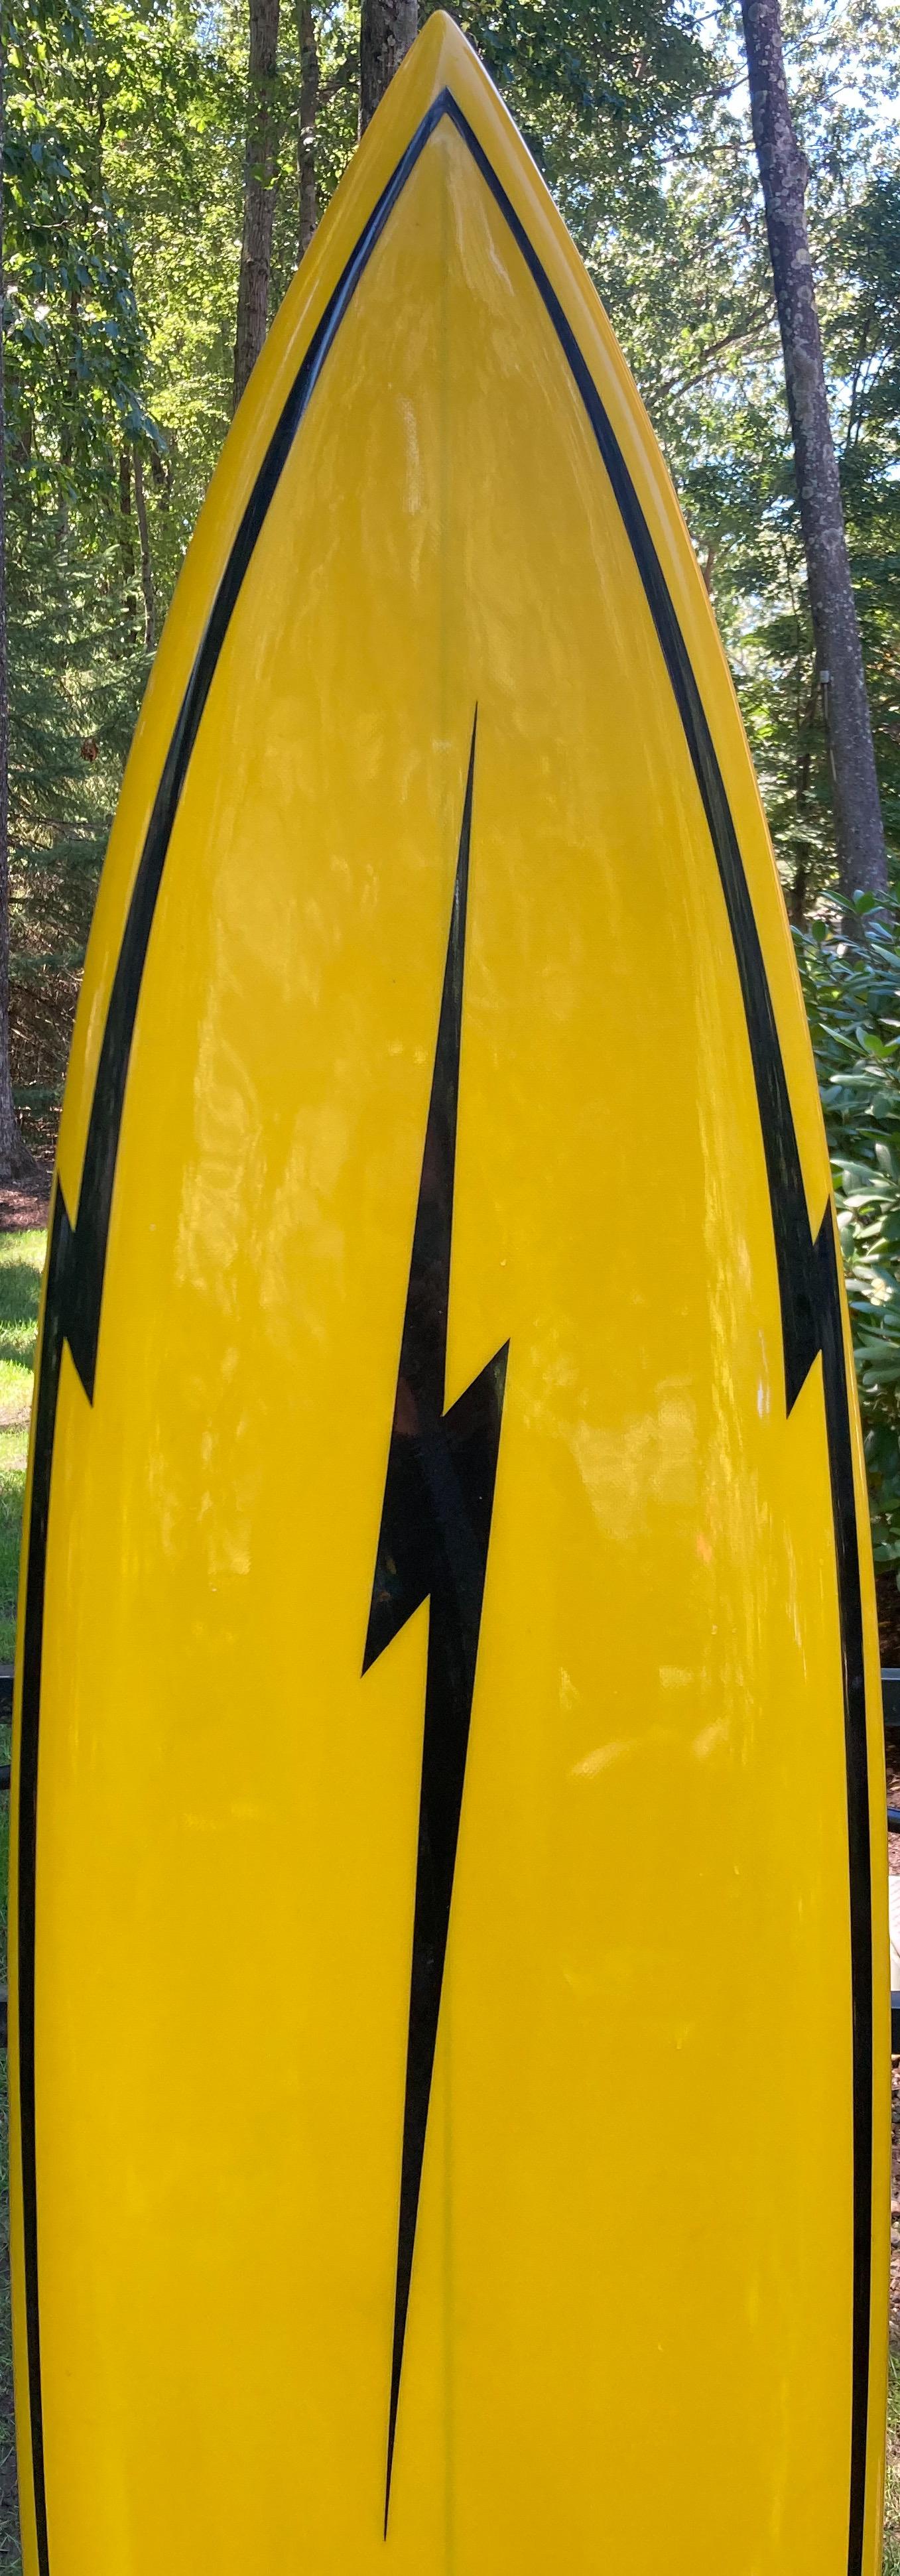 lighting bolt surfboard